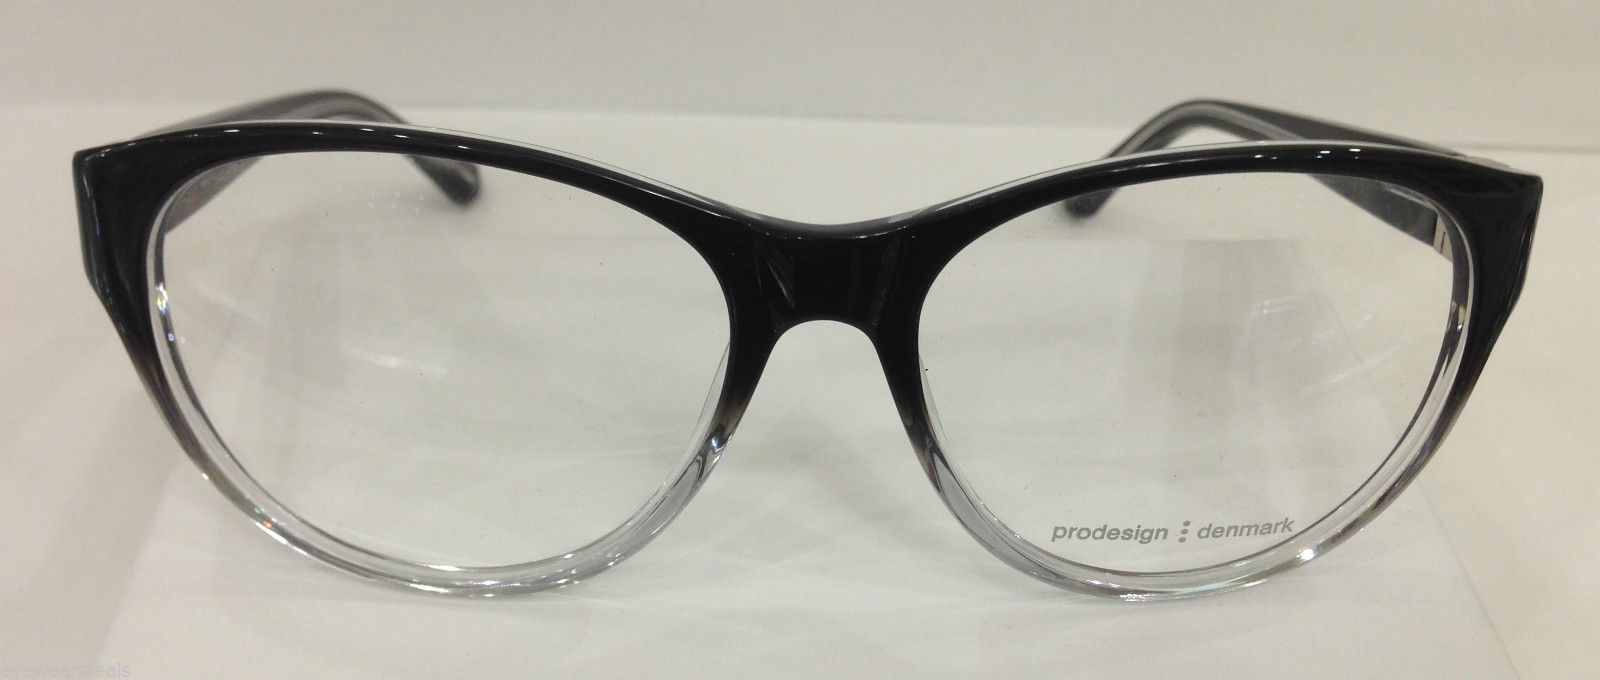 Prodesign Denmark 7613 Color 6012 Black Plastic Eyeglasses Frame 56-16-135 NEW - $102.32